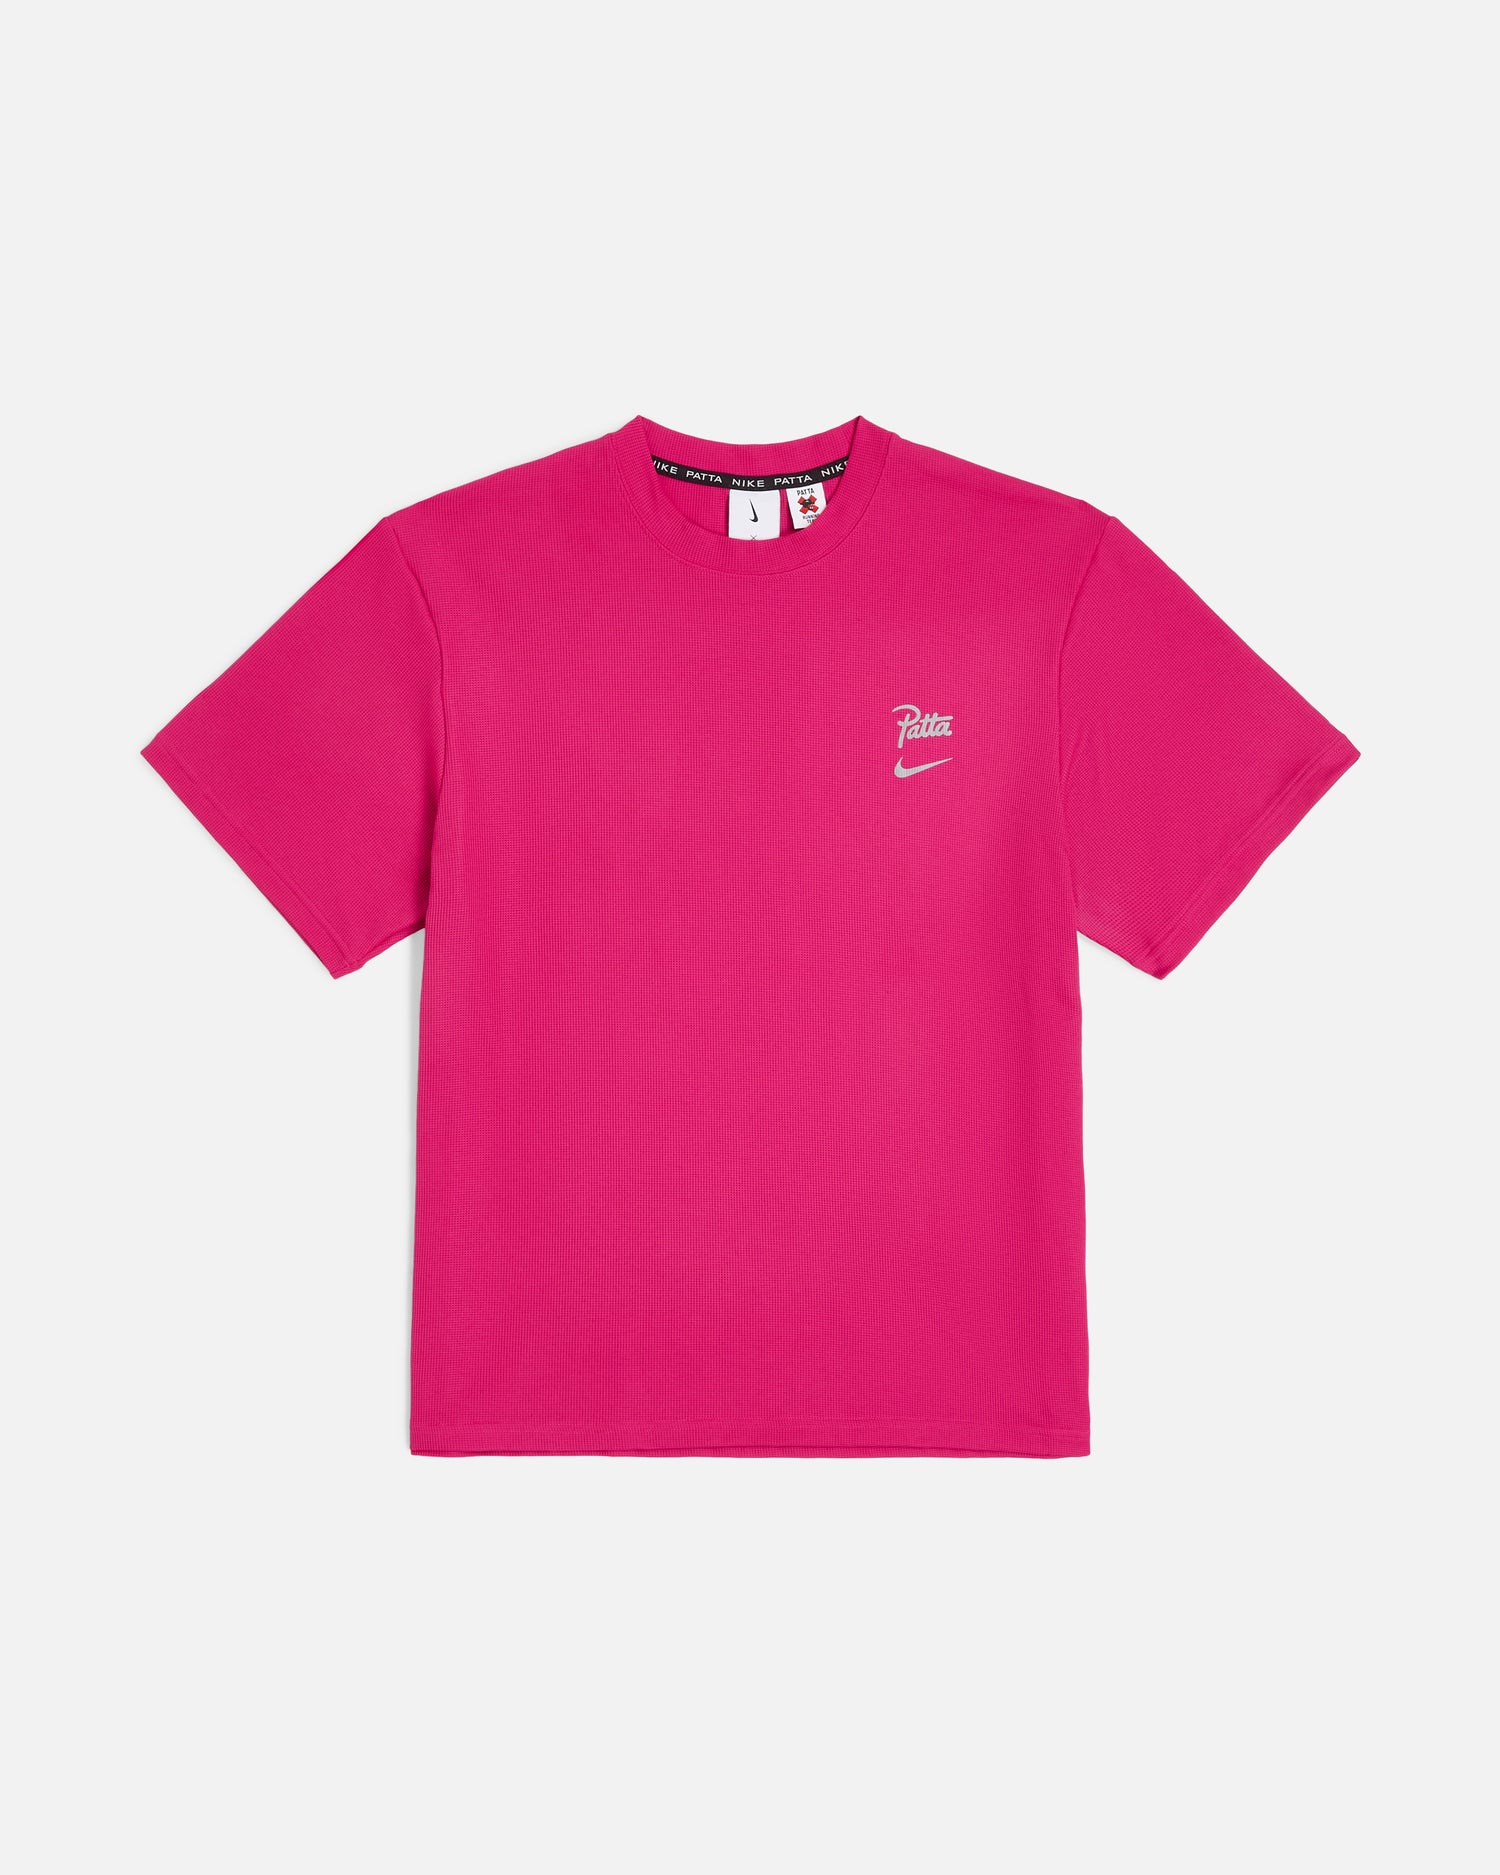 Nike x Patta Running Team T-shirt (Fireberry)